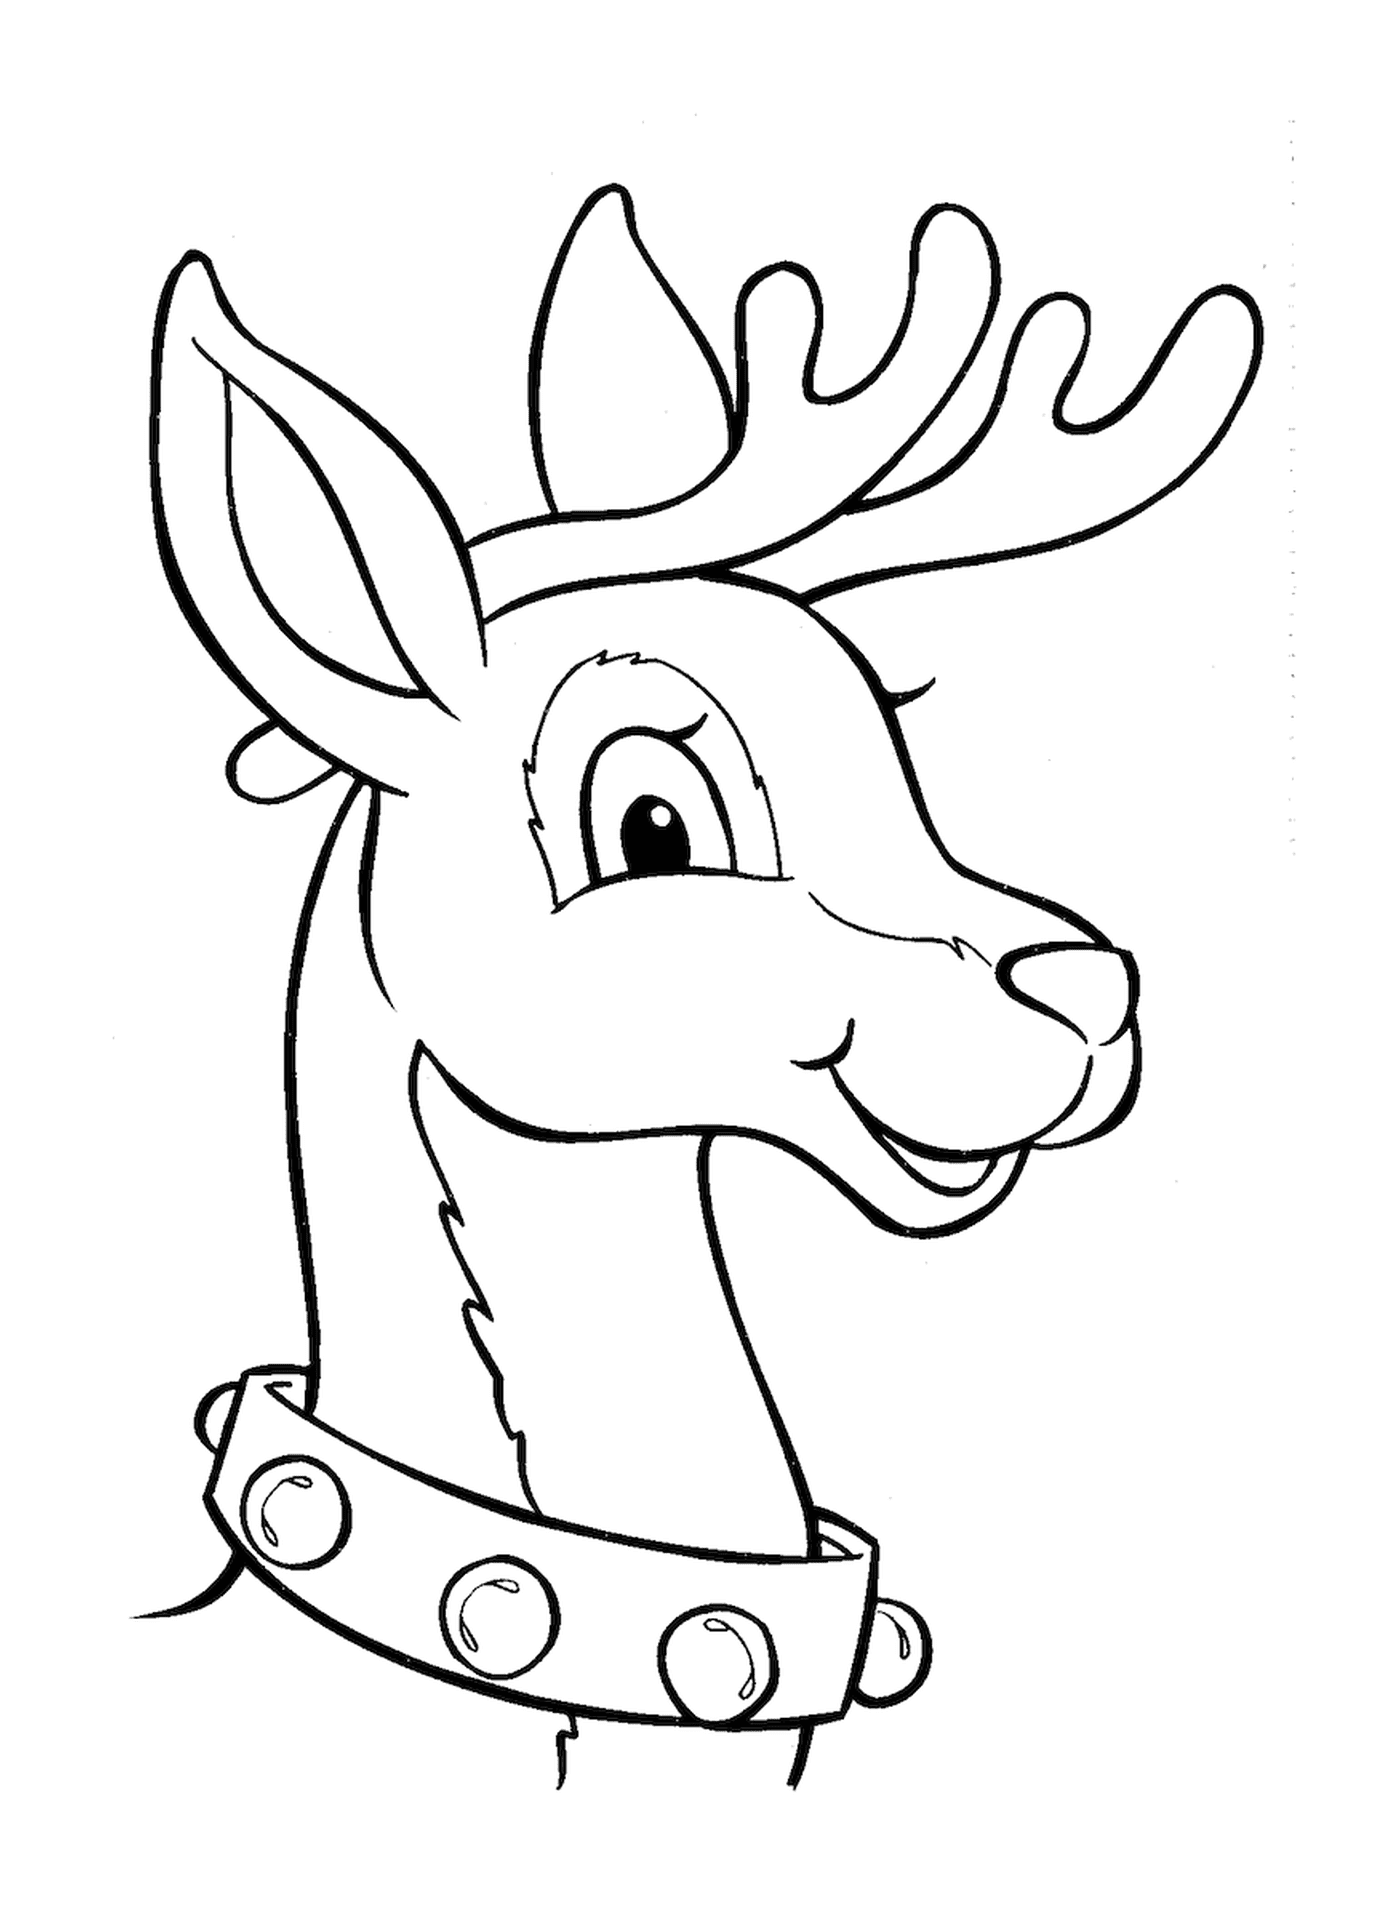  One of Santa's eight reindeer 